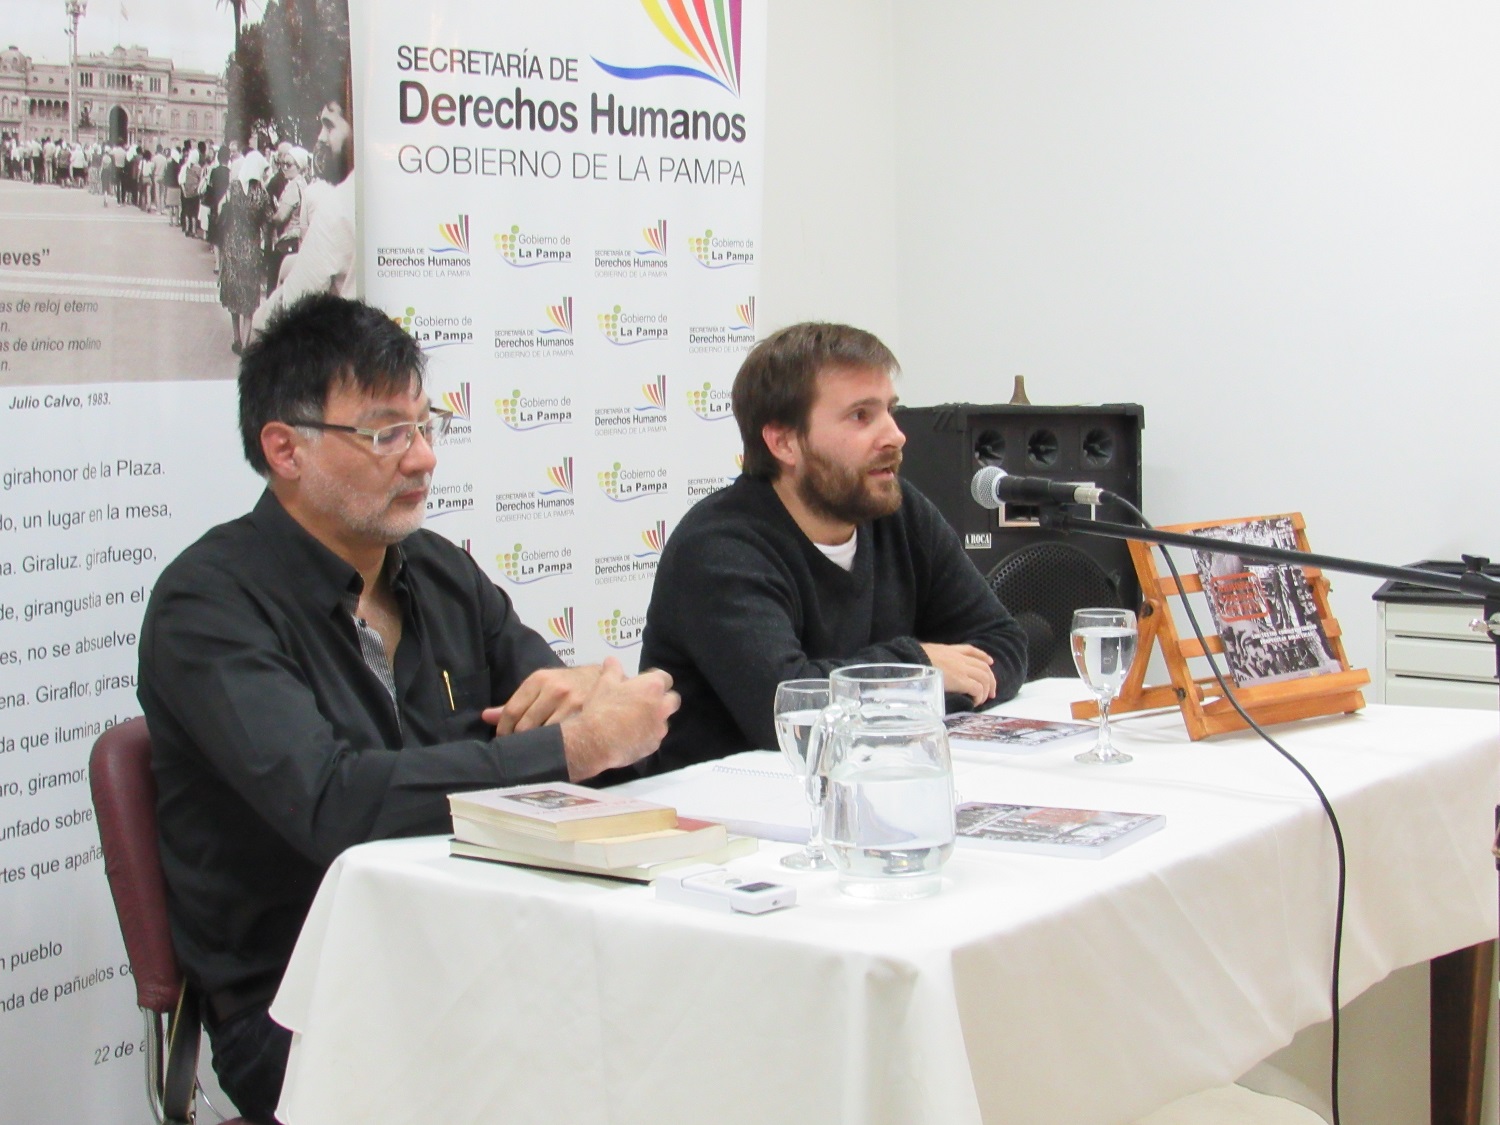 Realizaron actividad por el día de los Derechos Humanos  en La Pampa